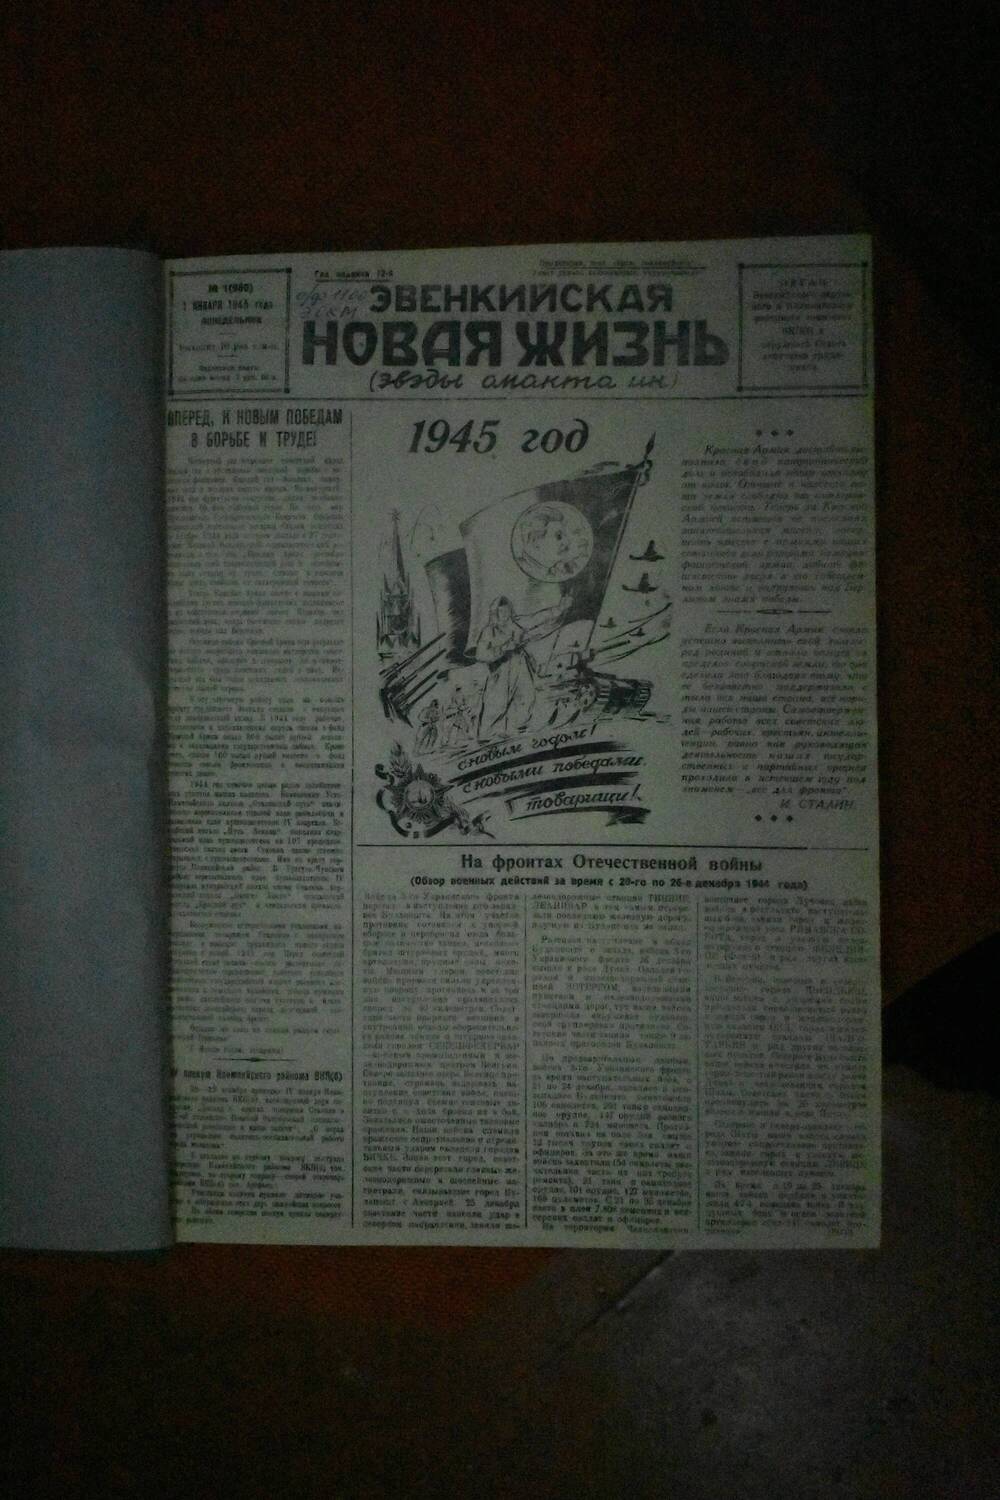 Подшивка газеты Эвенкийская новая жизнь за 1945 год (отсутствуют номера 114,117,118)